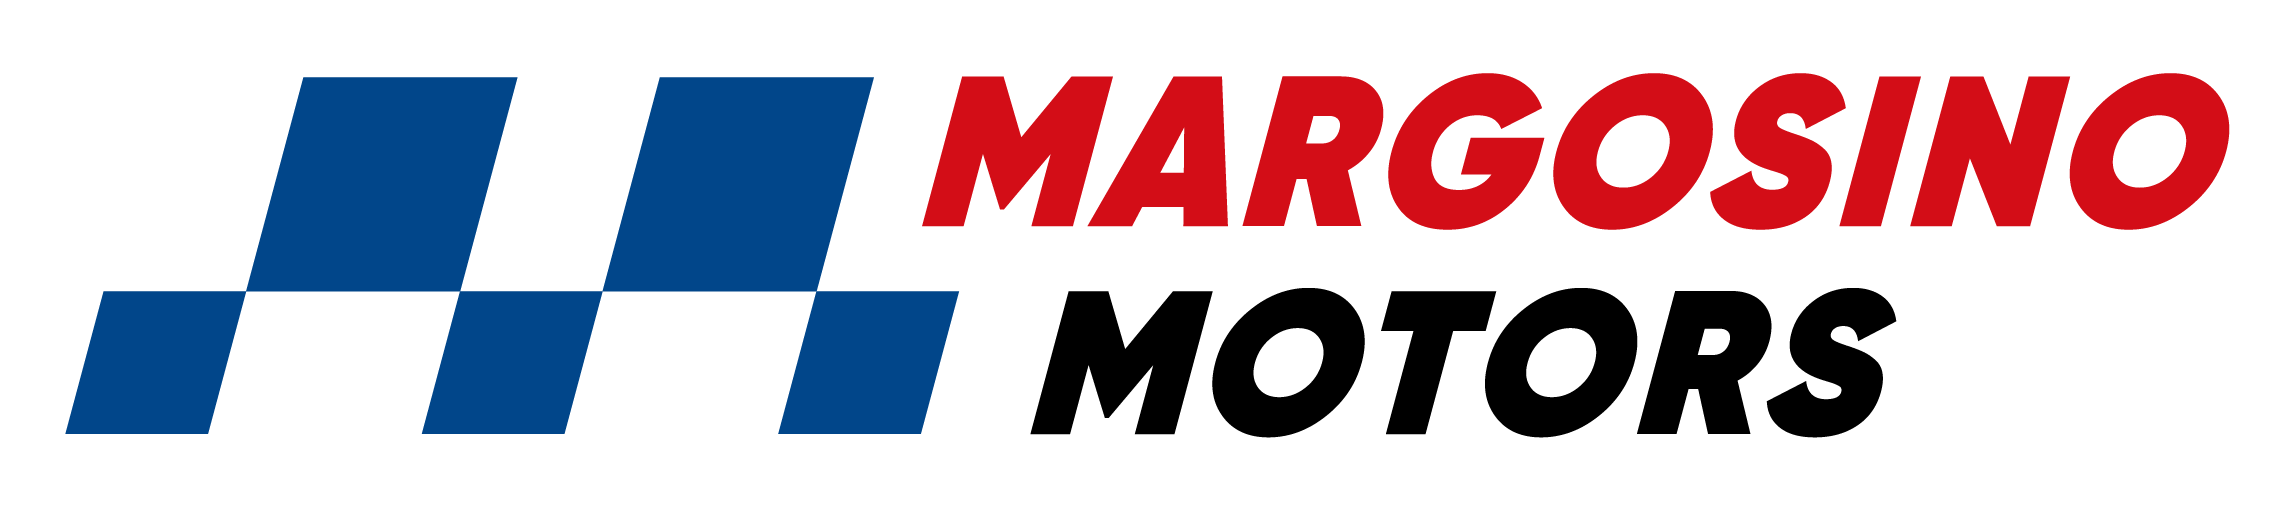 Margosino Motors